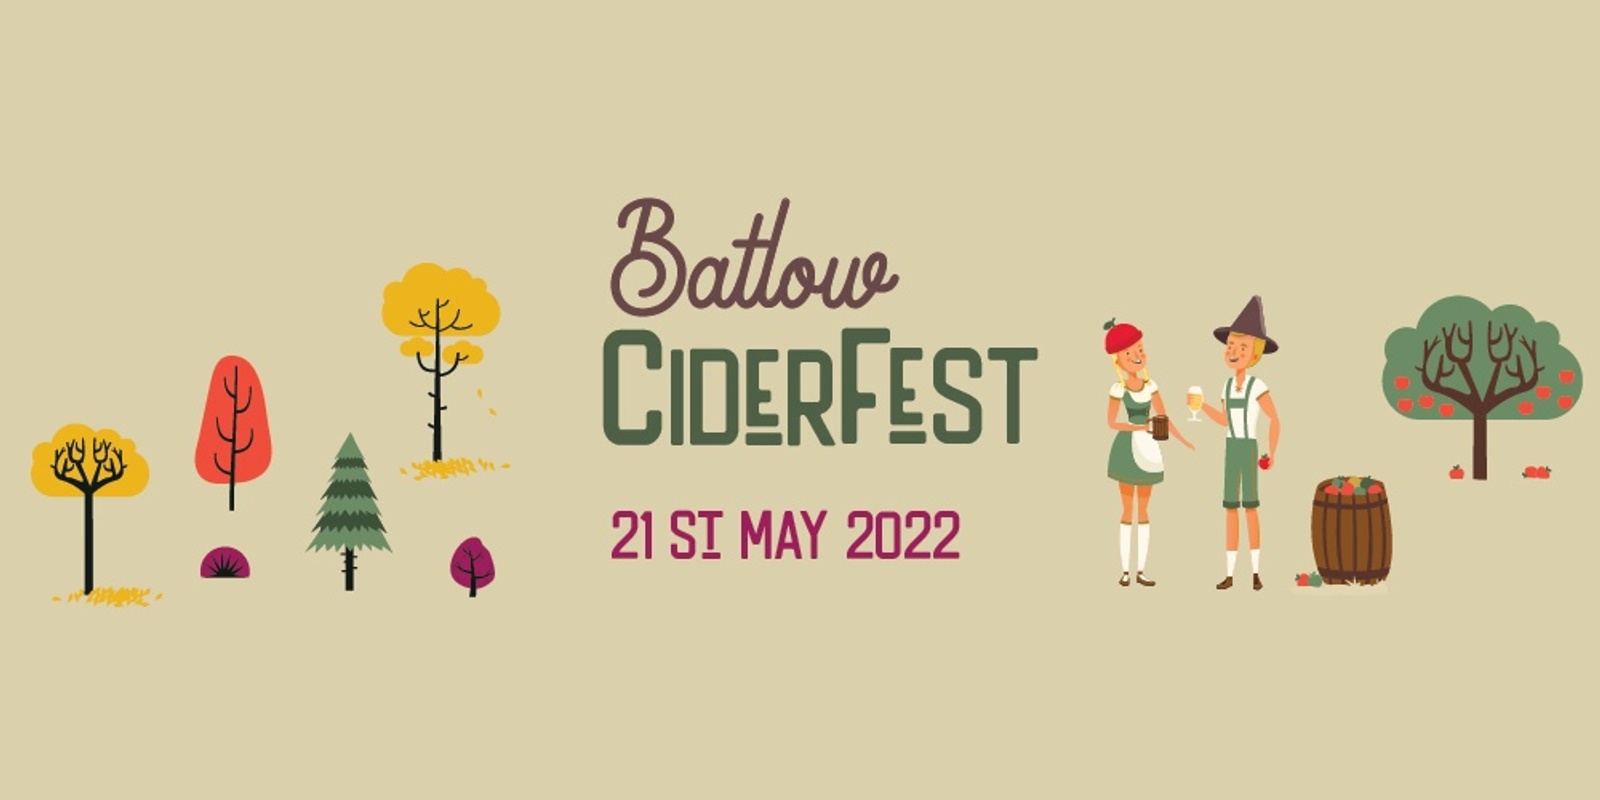 Banner image for Batlow CiderFest 2022